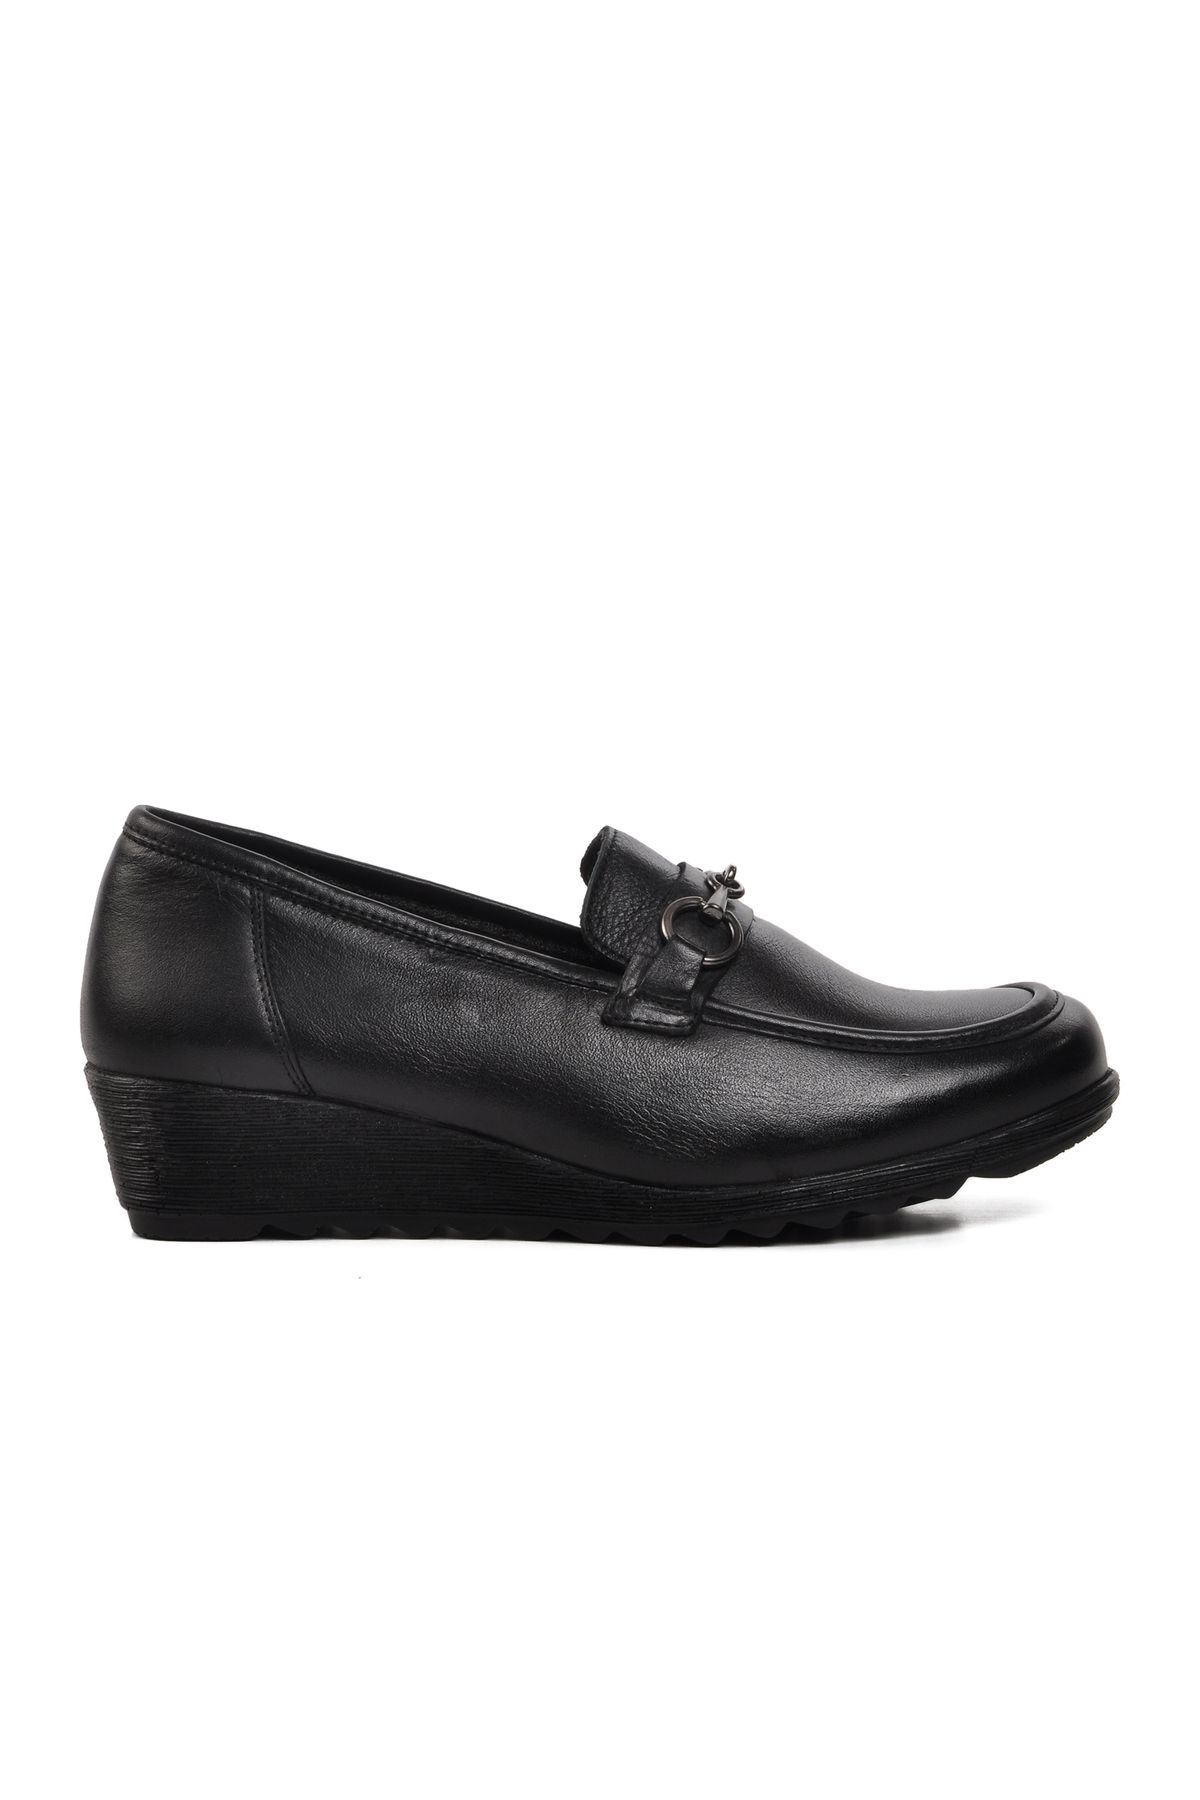 Muya 324709 Regno Siyah Kadın Günlük Ayakkabı